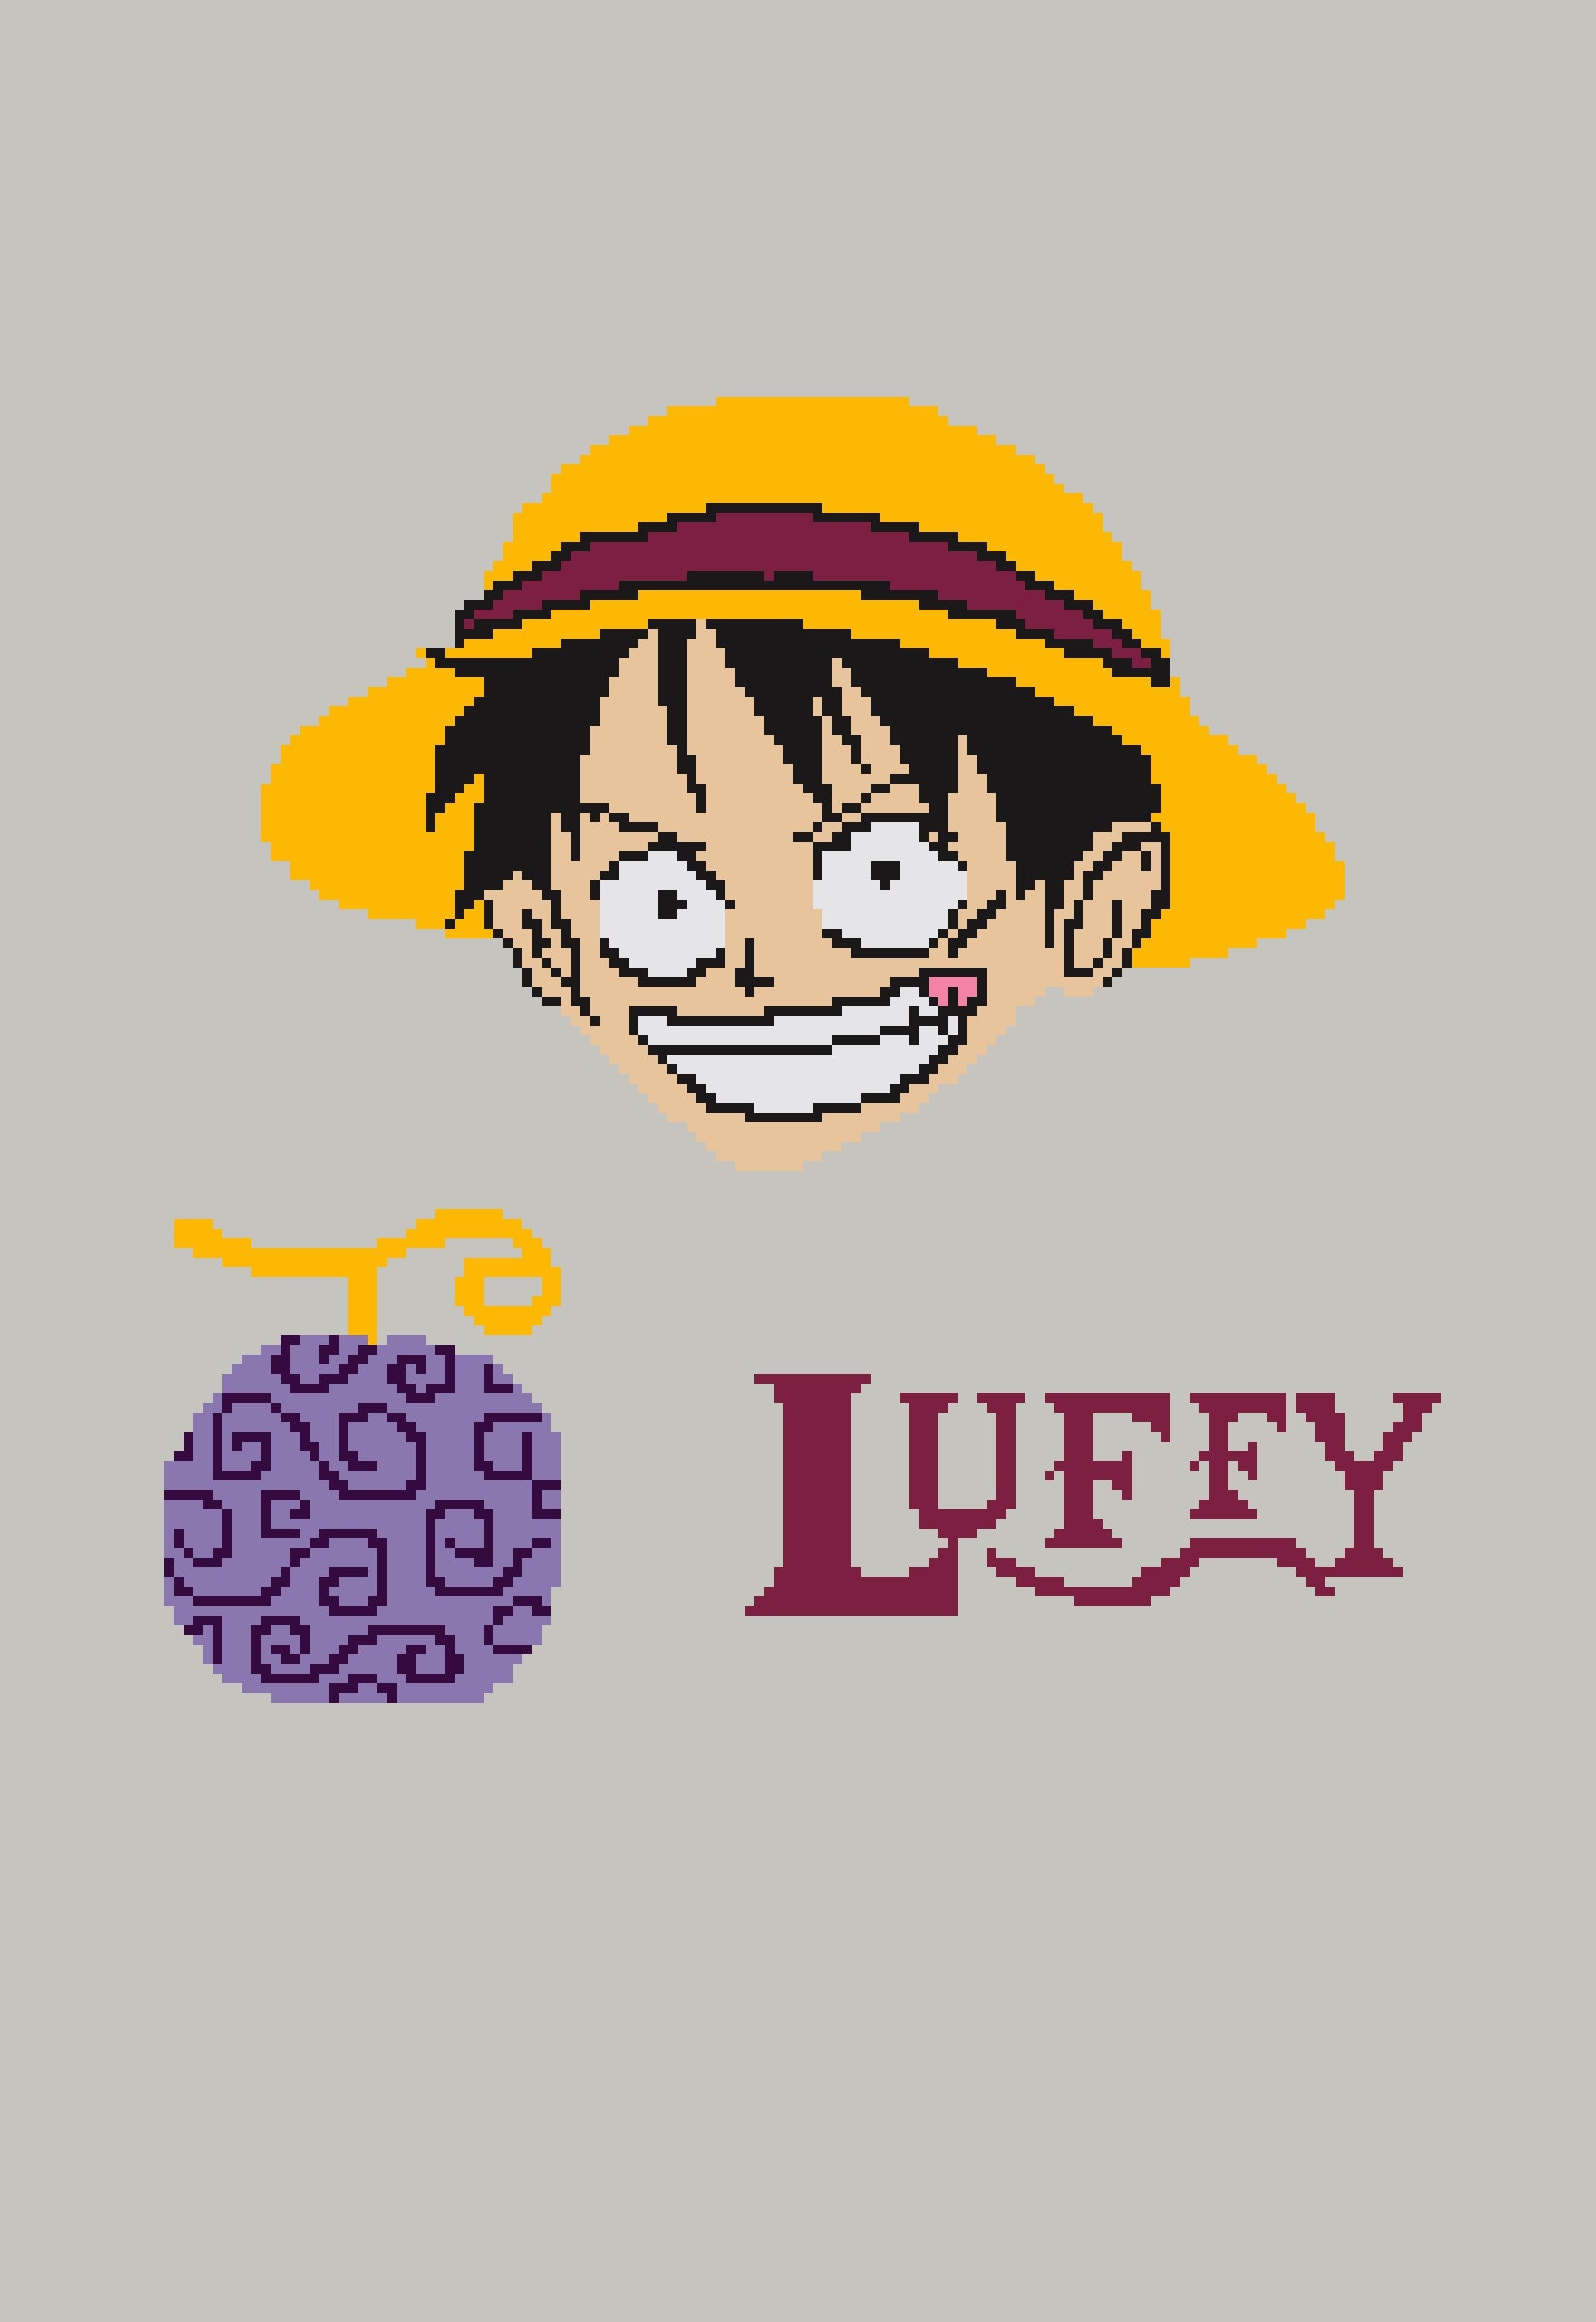 Pegatina con la obra «One Piece - Luffy y su bandera» de Yzertaa